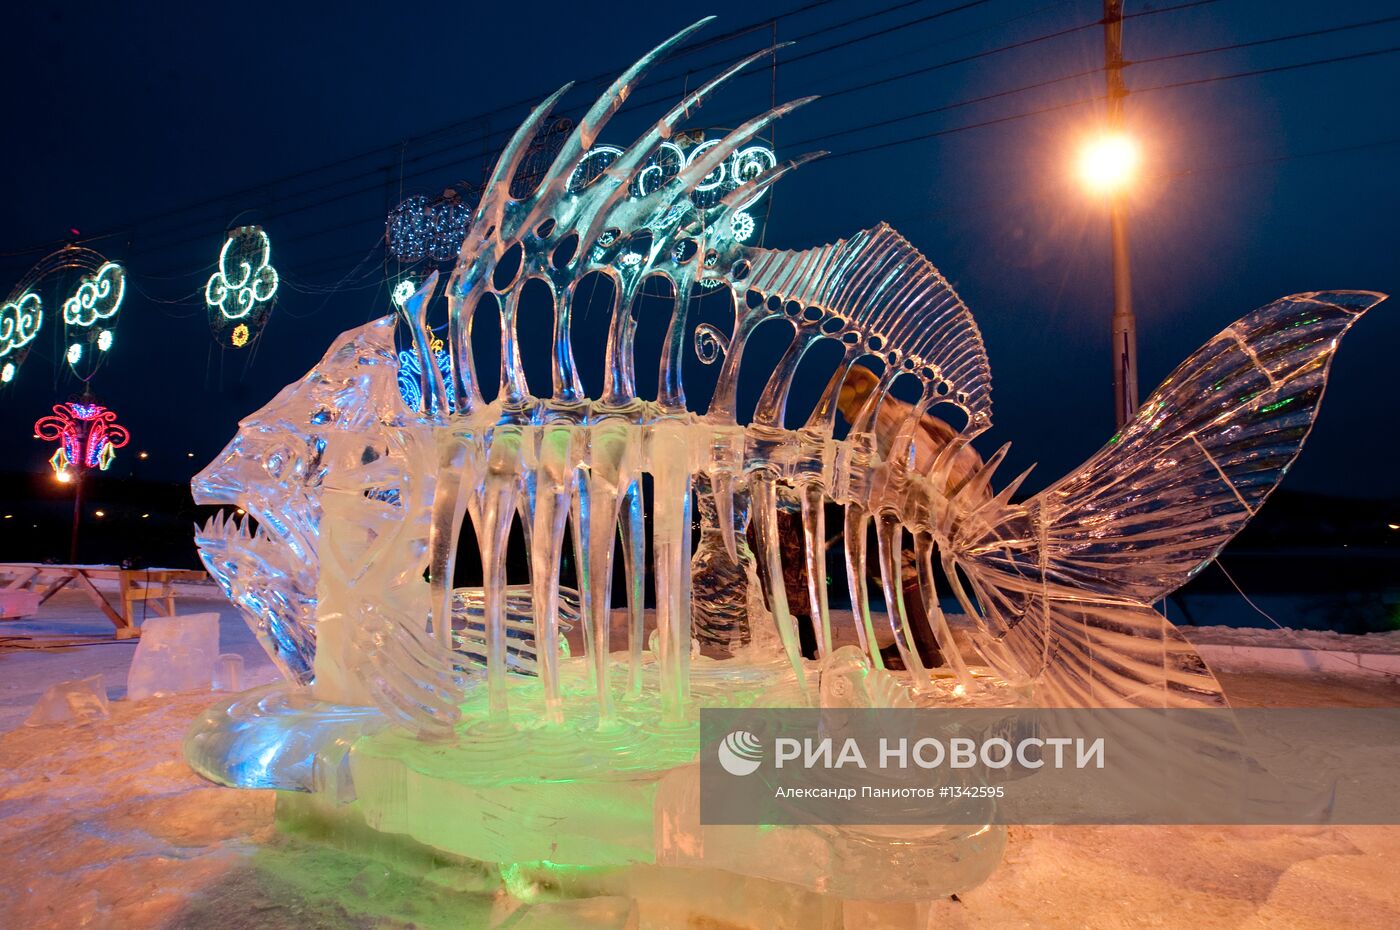 Фестиваль-конкурс ледовых скульптур "Волшебный лед Сибири"